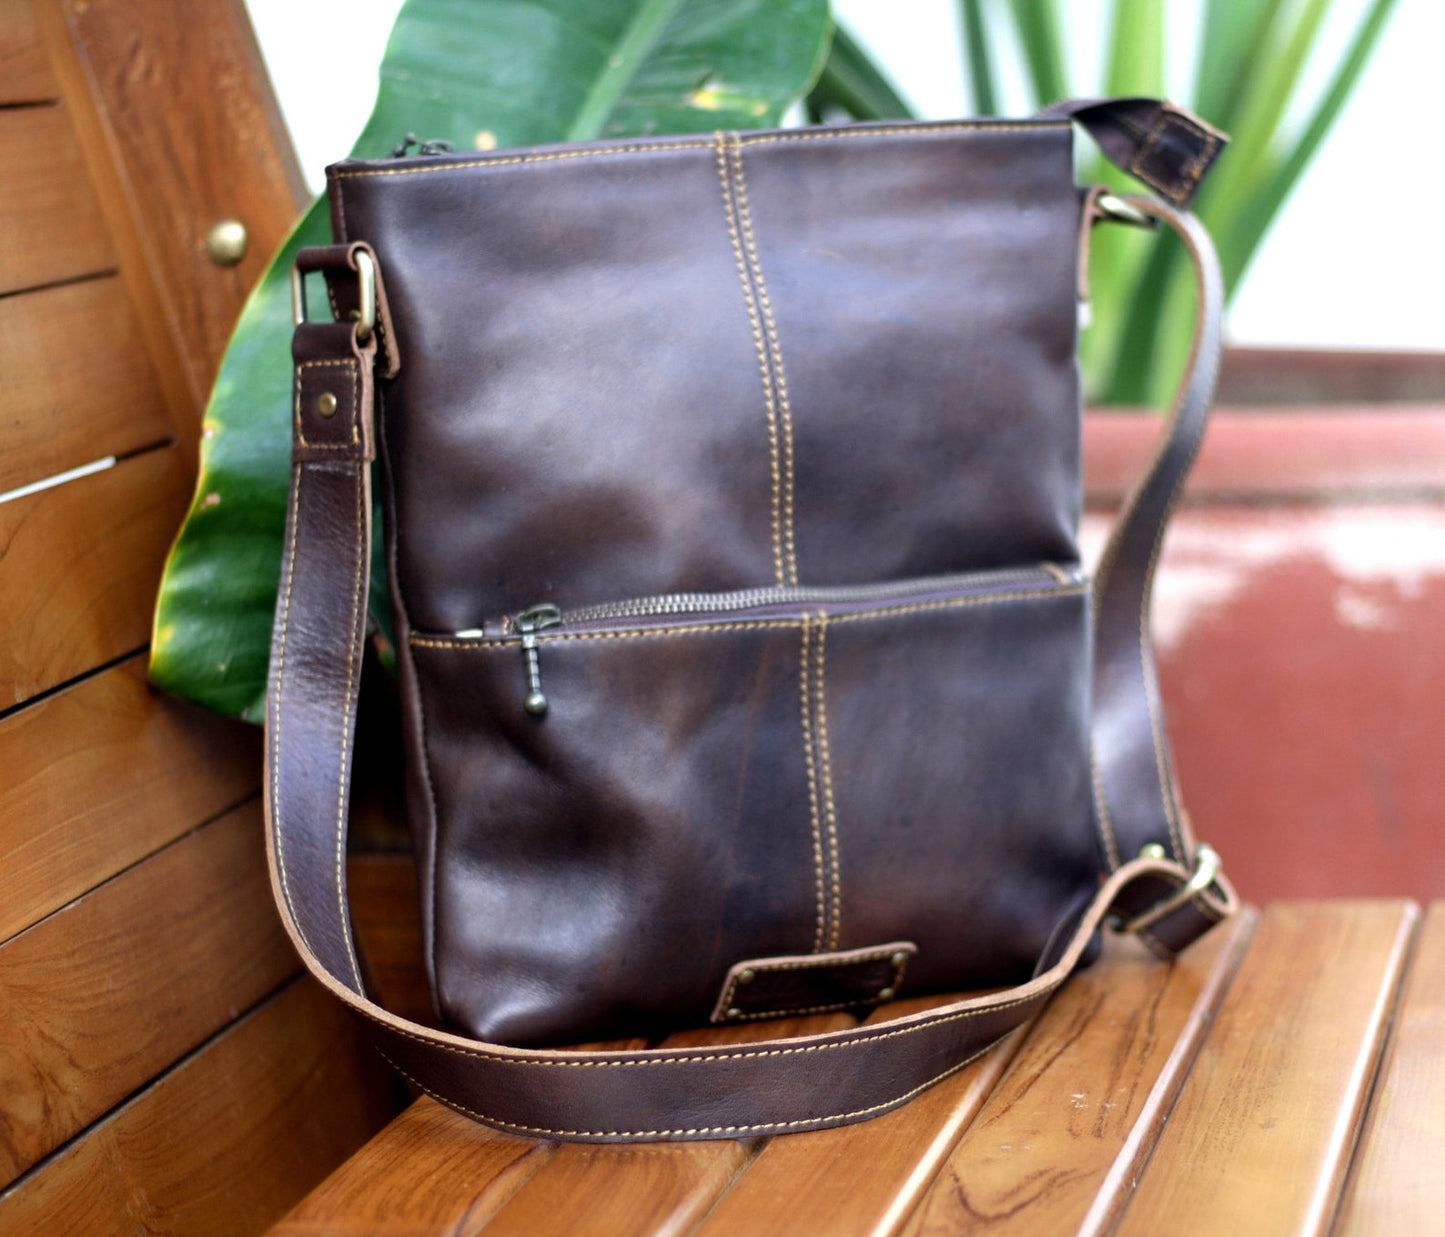 Real leather customized shoulder sling bag